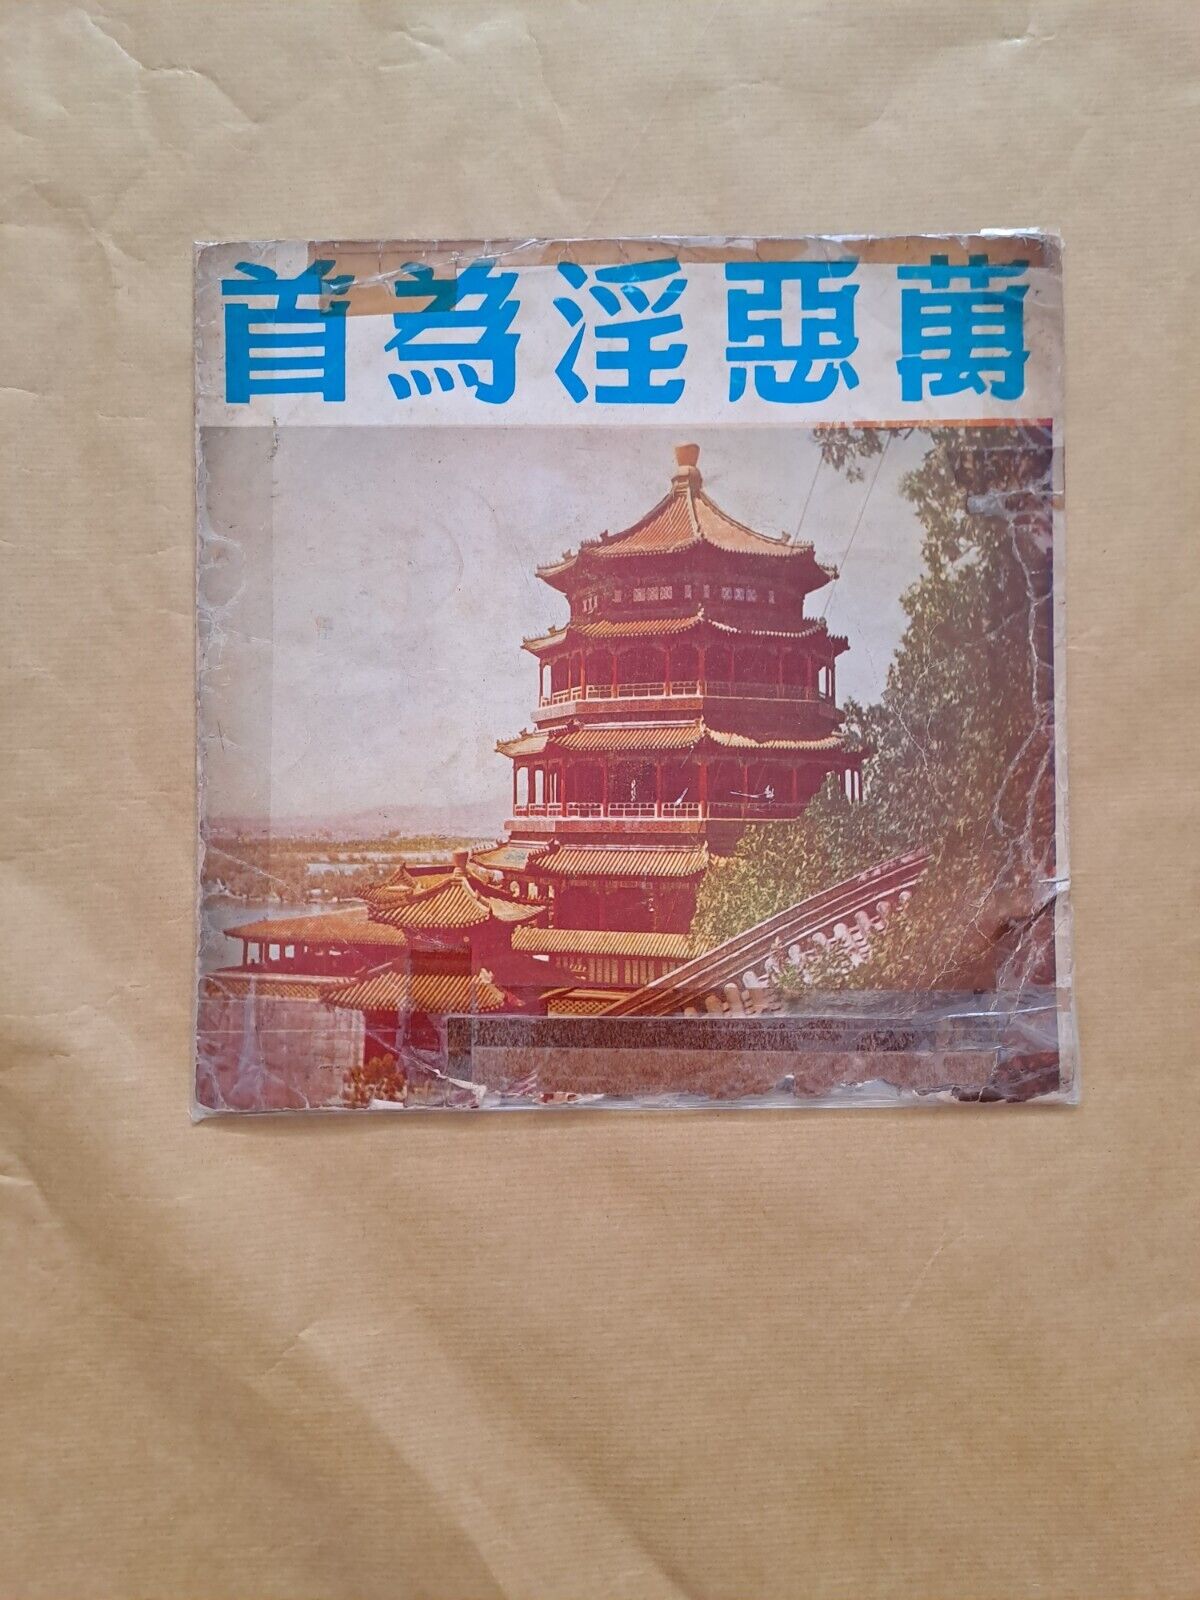 新马仔Sun Ma Sze Chang LP Vinyl Record Chinese Cantonese Opera新馬師曾吳君麗萬惡淫為首粤曲黑膠唱片